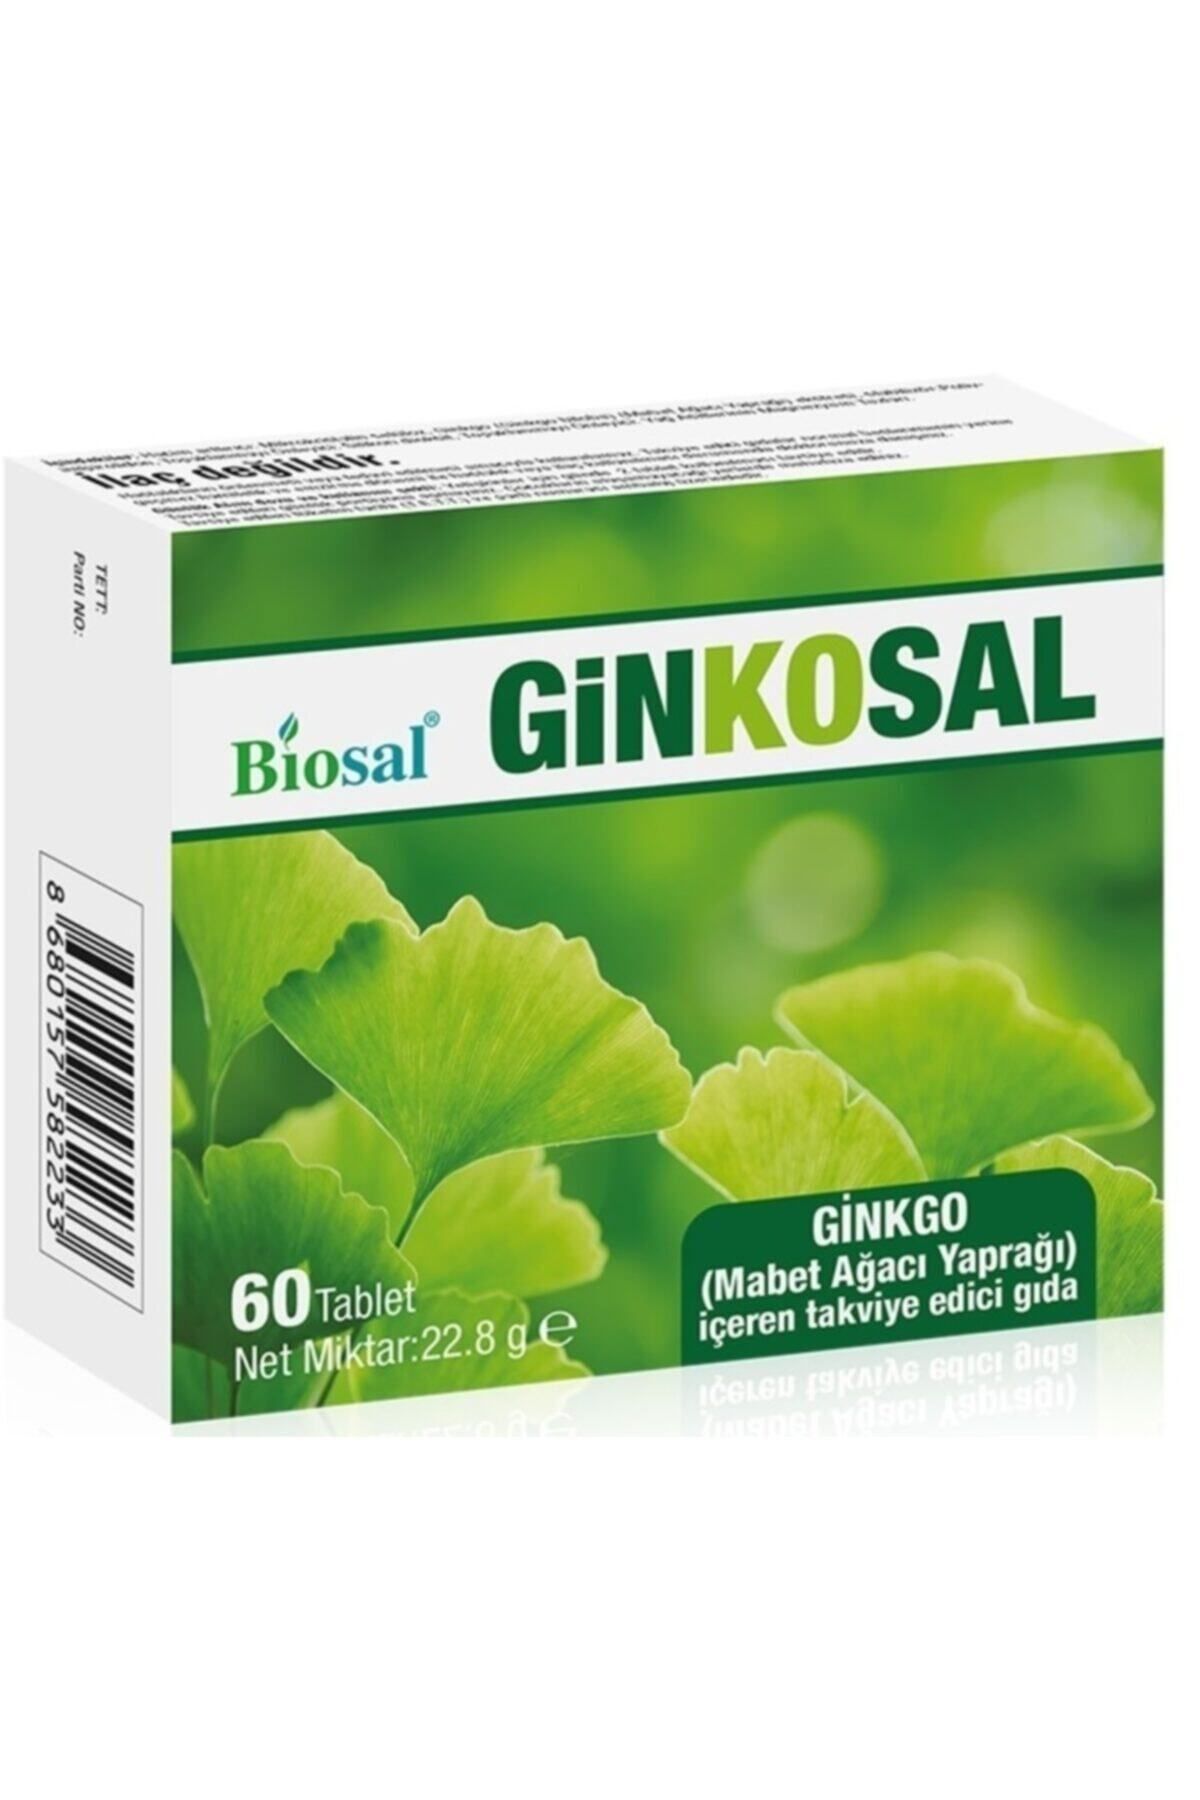 Biosal Ginkosal Ginkgo Biloba Mabet Ağacı Yaprağı Içeren 60 Tablet Takviye Edici Gıda